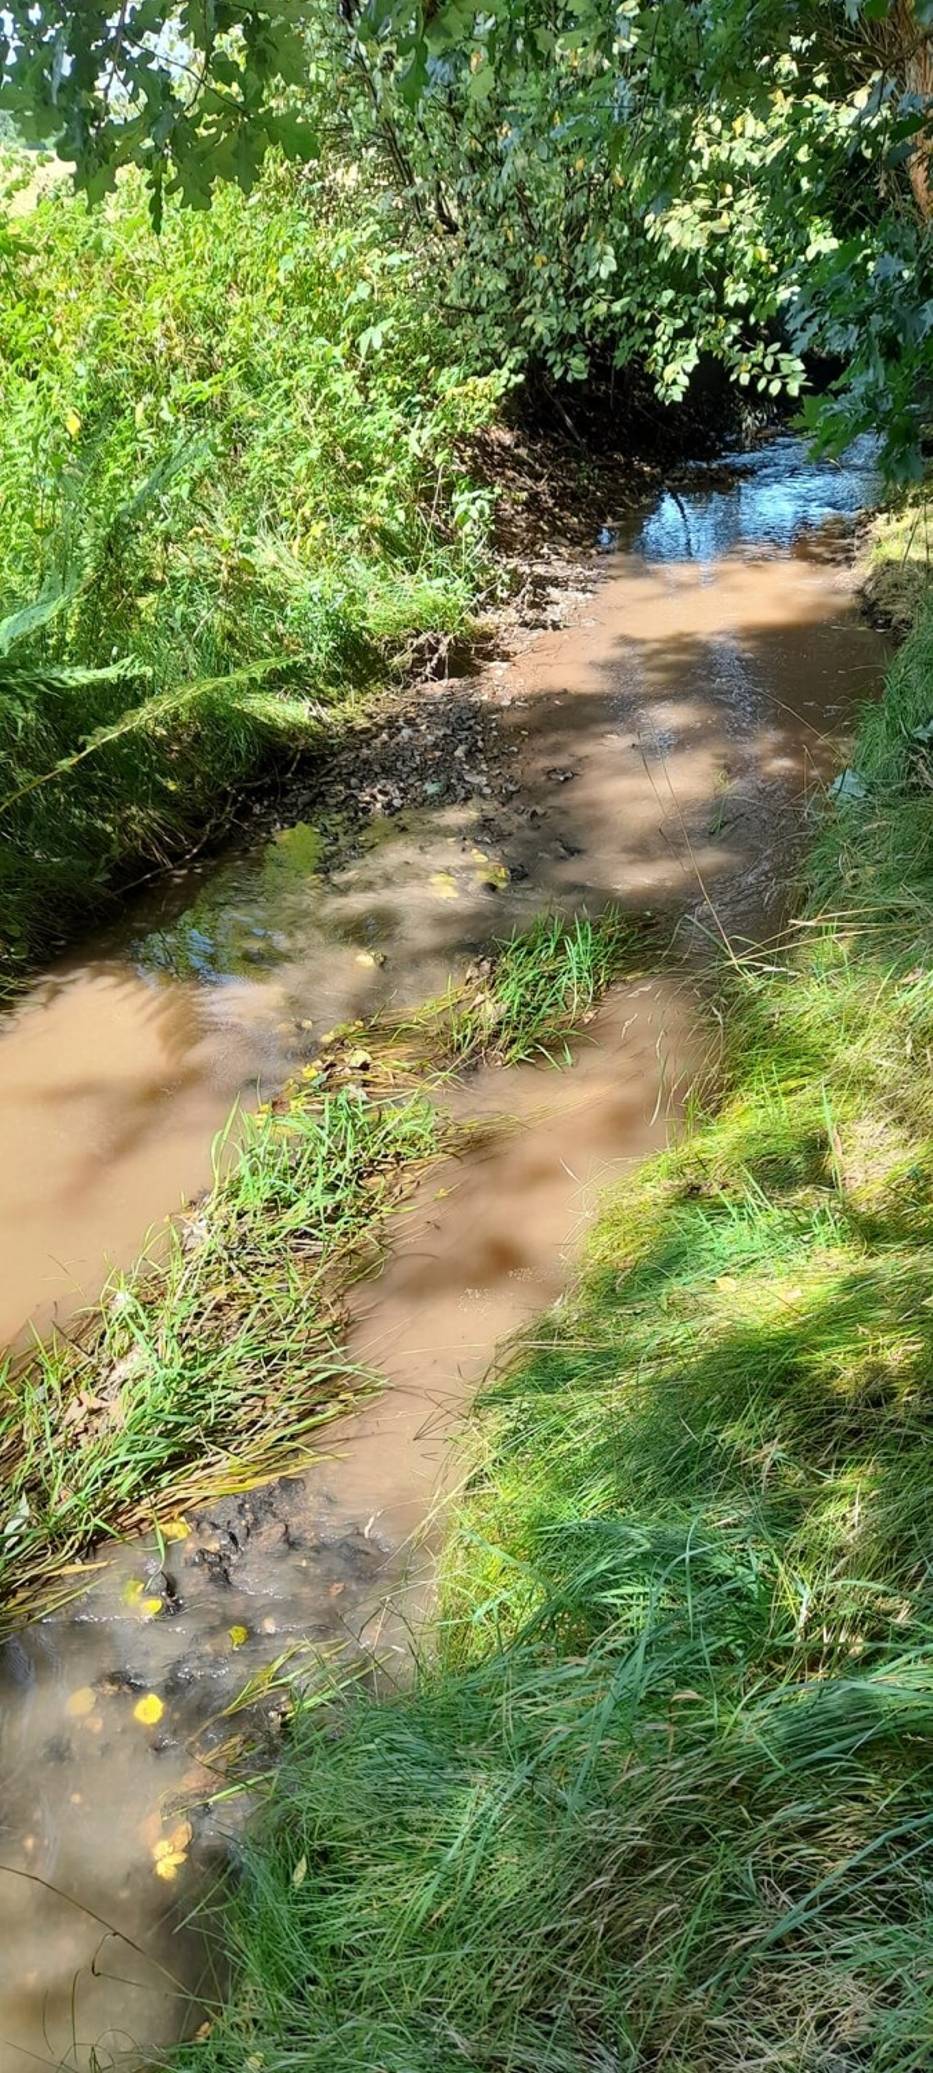 Rzeka Lesk w Boguszowie-Gorcach na Dolnym Śląsku zanieczyszczona. Mieszkańcy zaniepokojeni, strażnicy znaleźli przyczynę - zdjęcia 